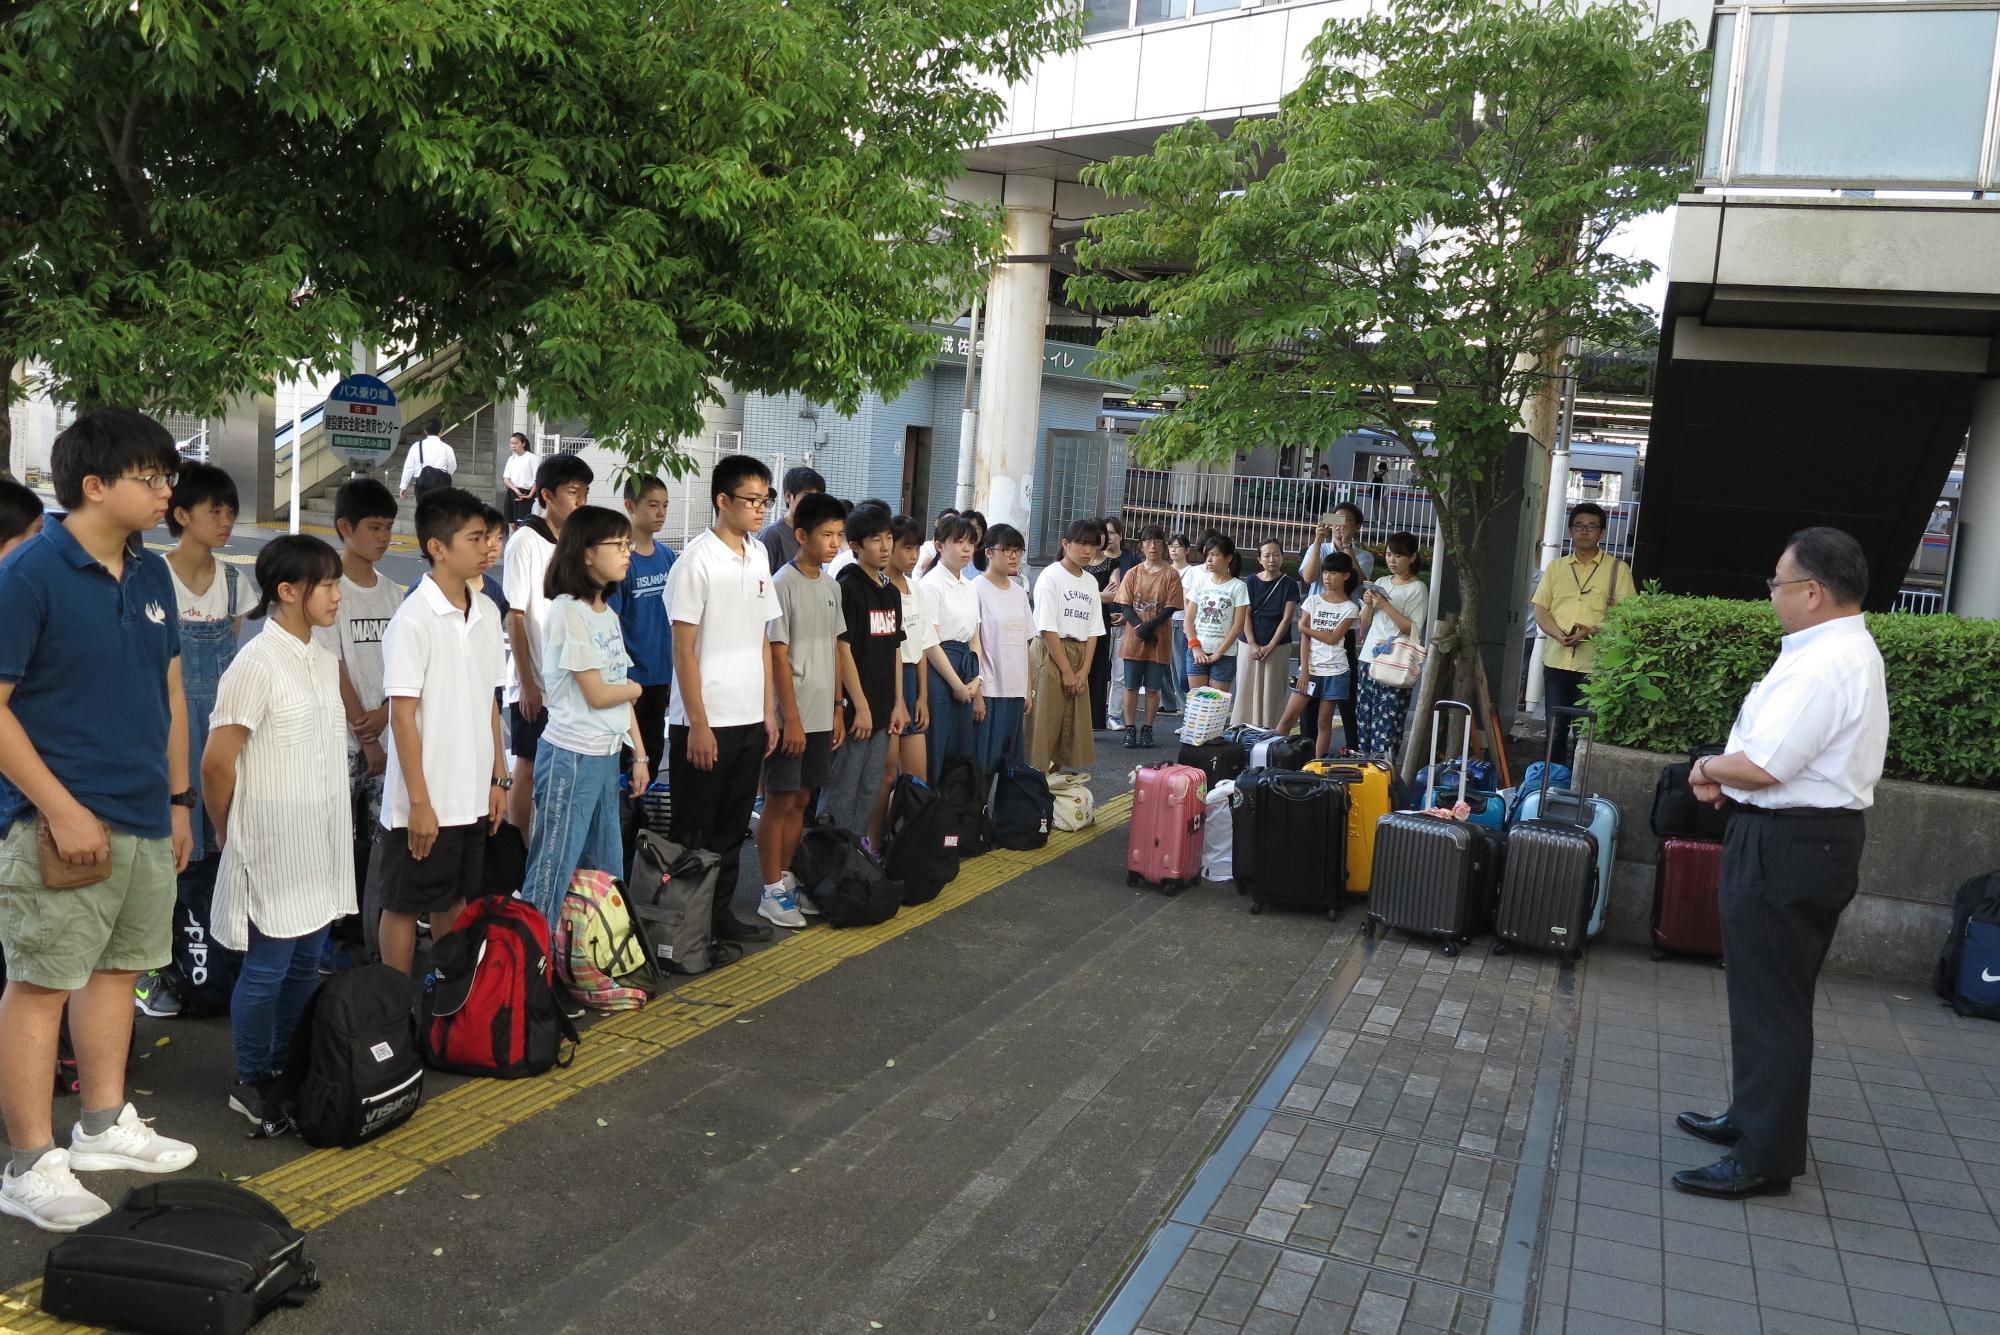 右側に市長、左側には並んで立っている学生たち、中央には沢山のスーツケースが置かれている写真